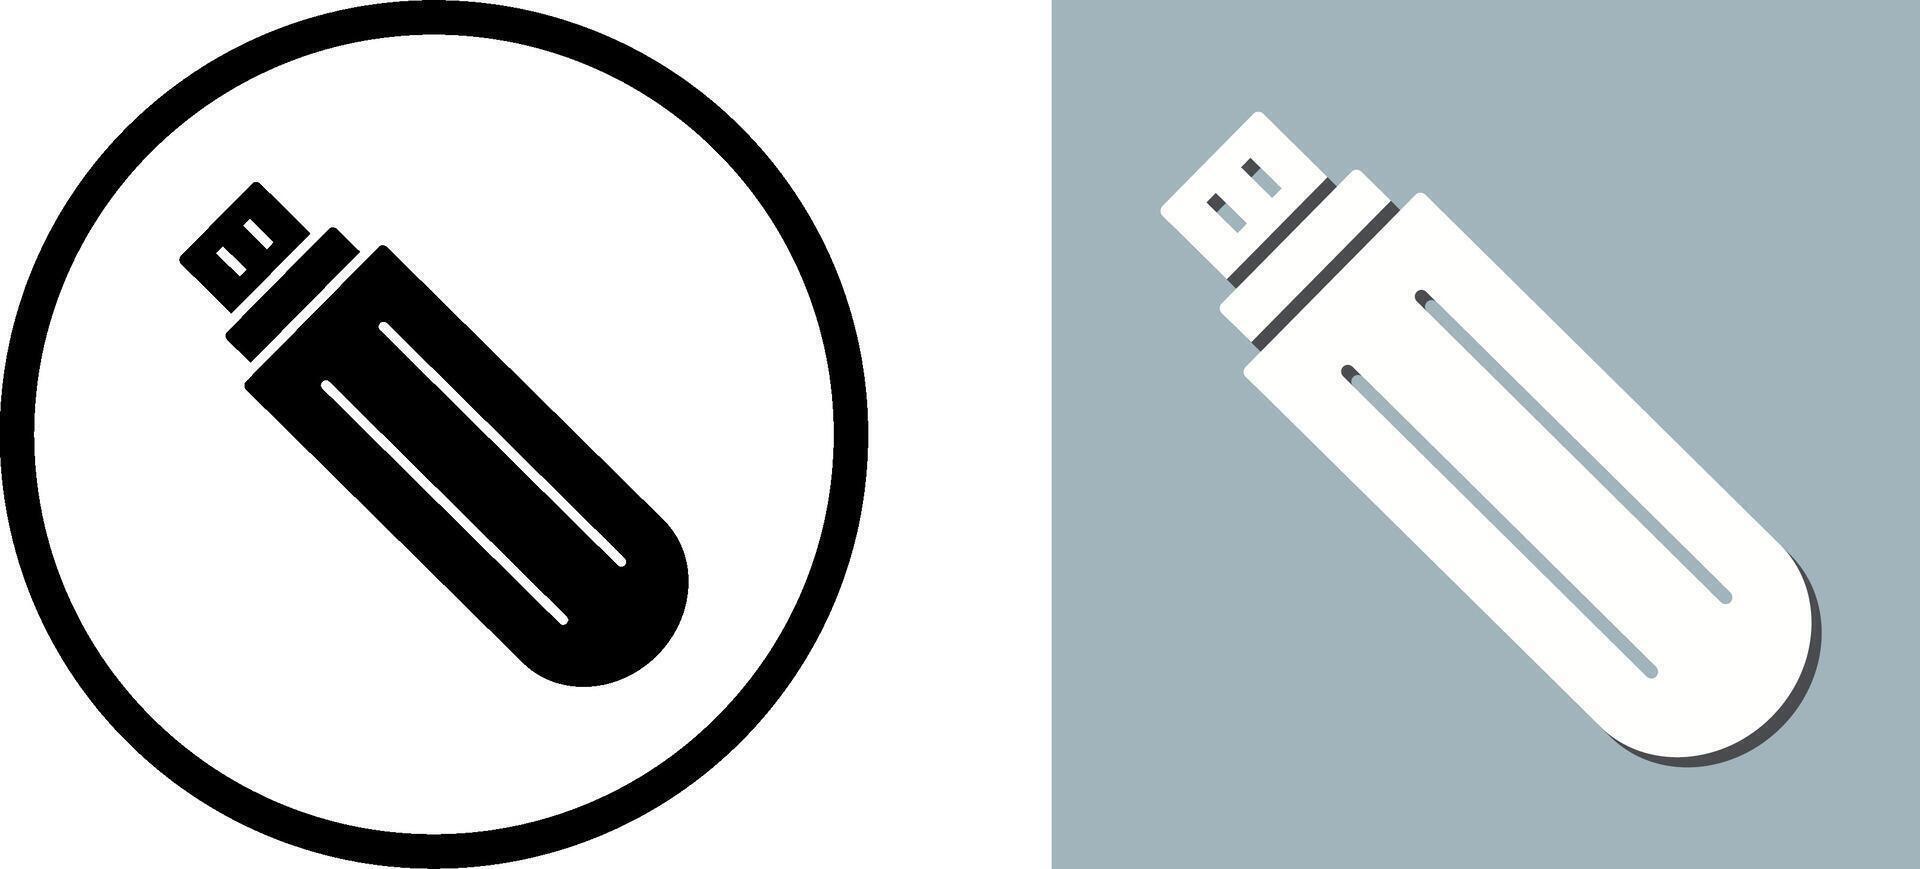 Unique USB Drive Icon Design vector